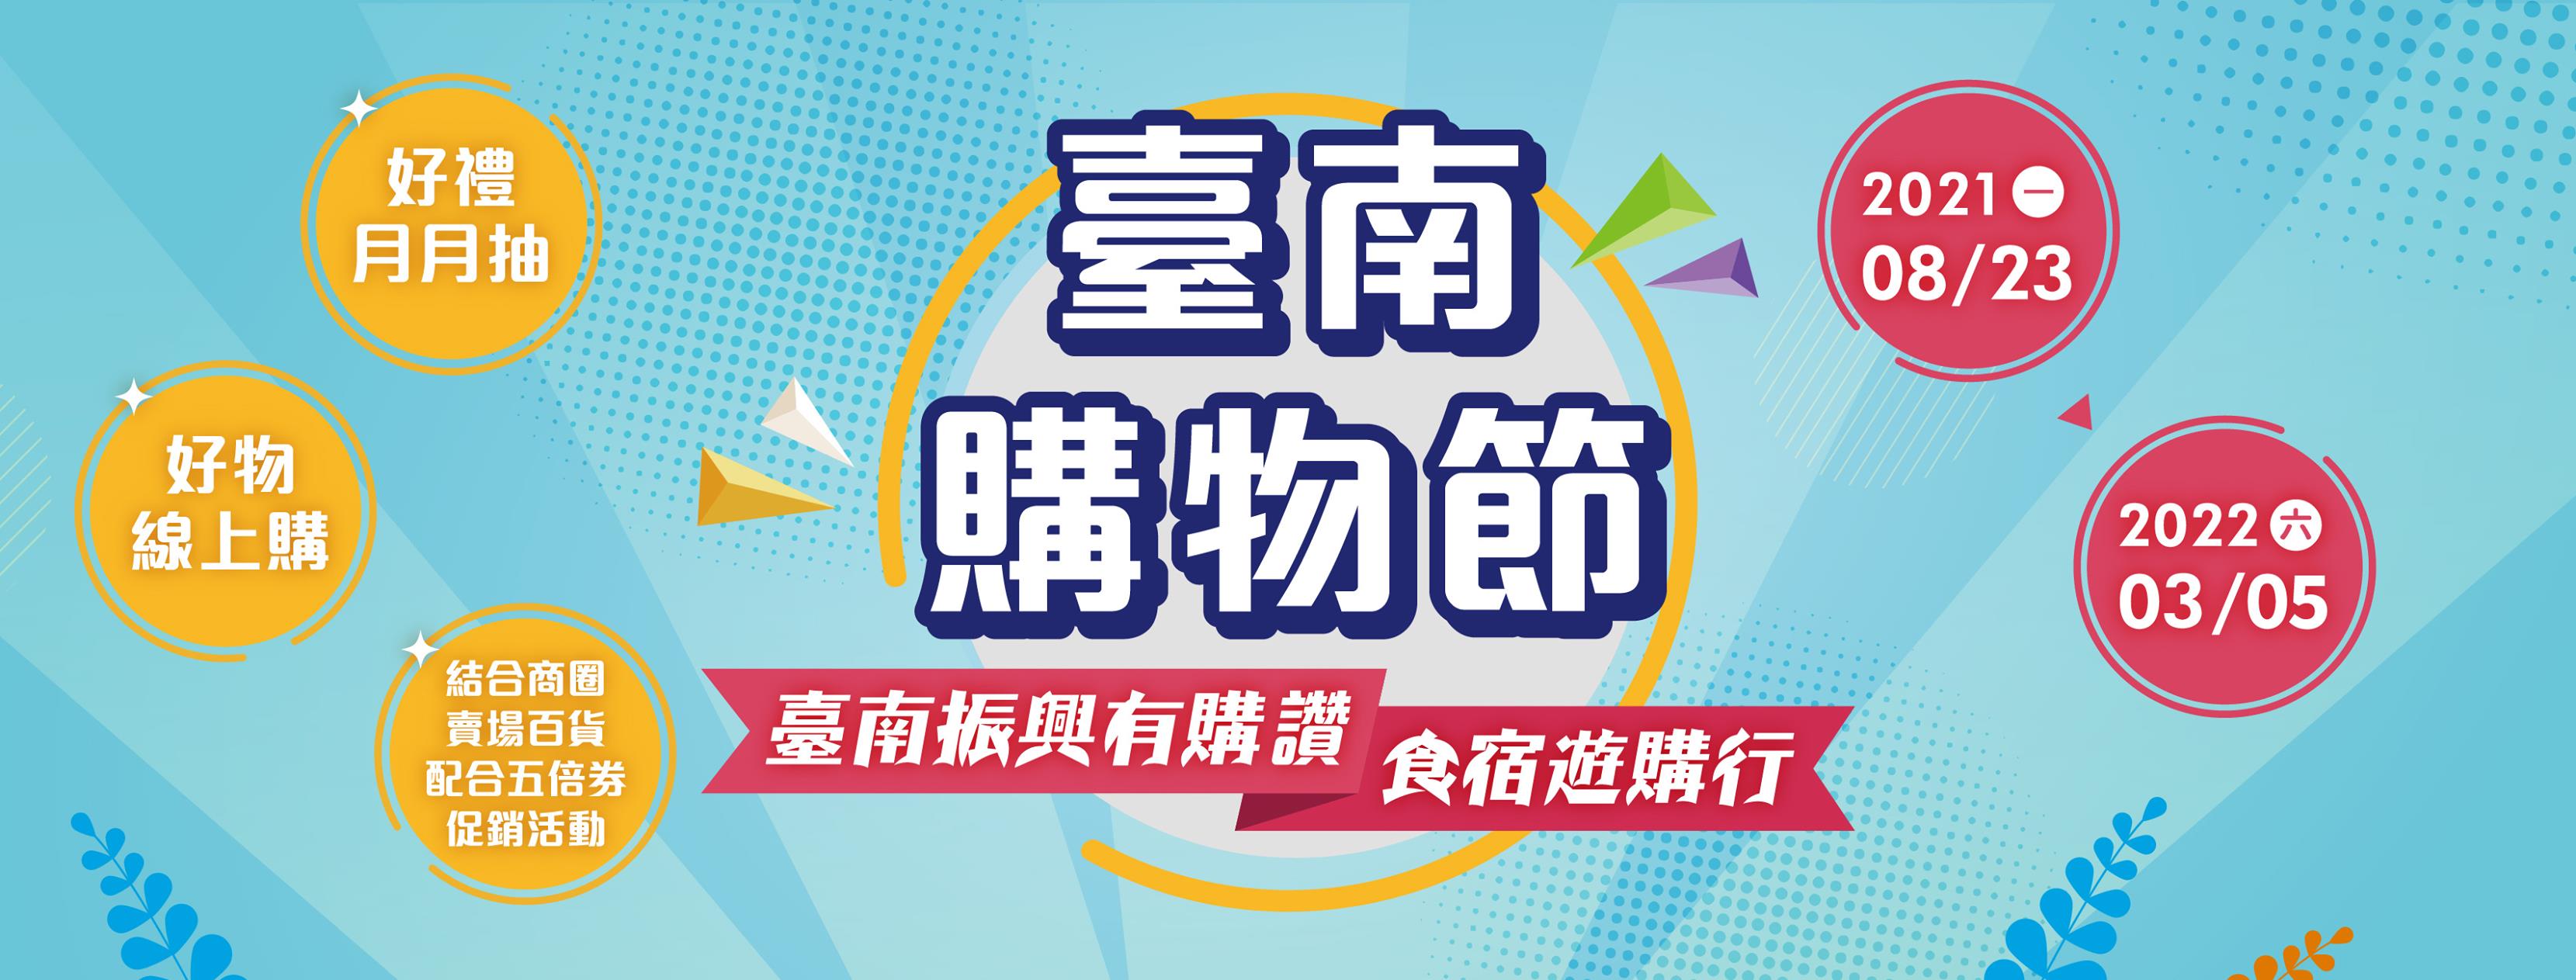 Festival Belanja Tainan 2021 akan diadakan hingga 5 Maret 2022. Sumber foto: Tainan Economic Intelligence Facebook)